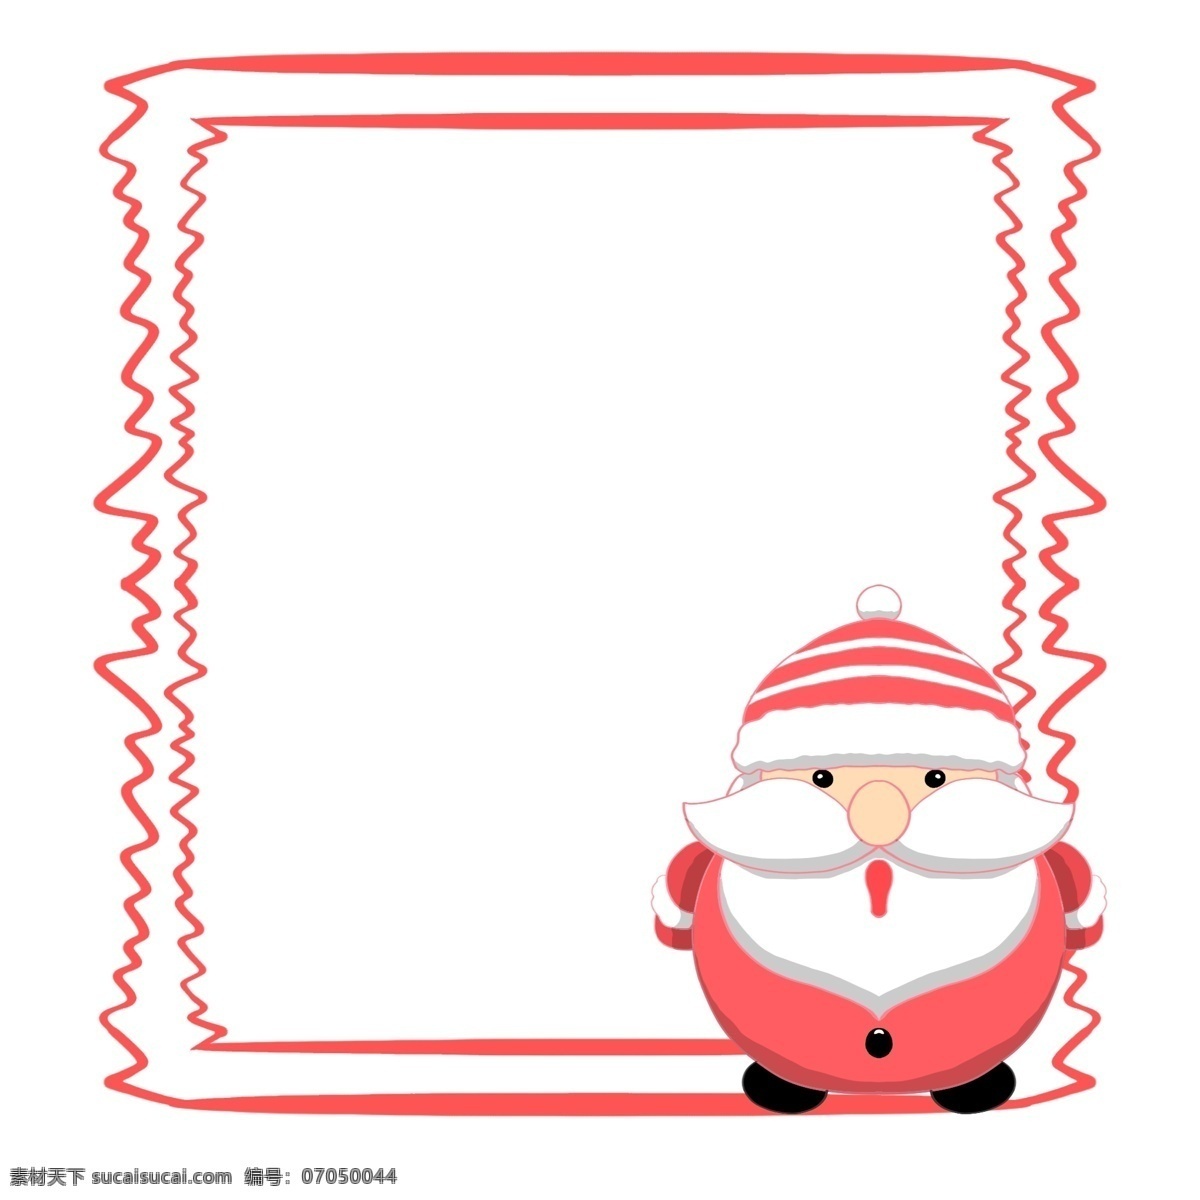 圣诞节 圣诞老人 边框 漂亮的边框 可爱的边框 手绘边框 卡通边框 人物 红色的边框